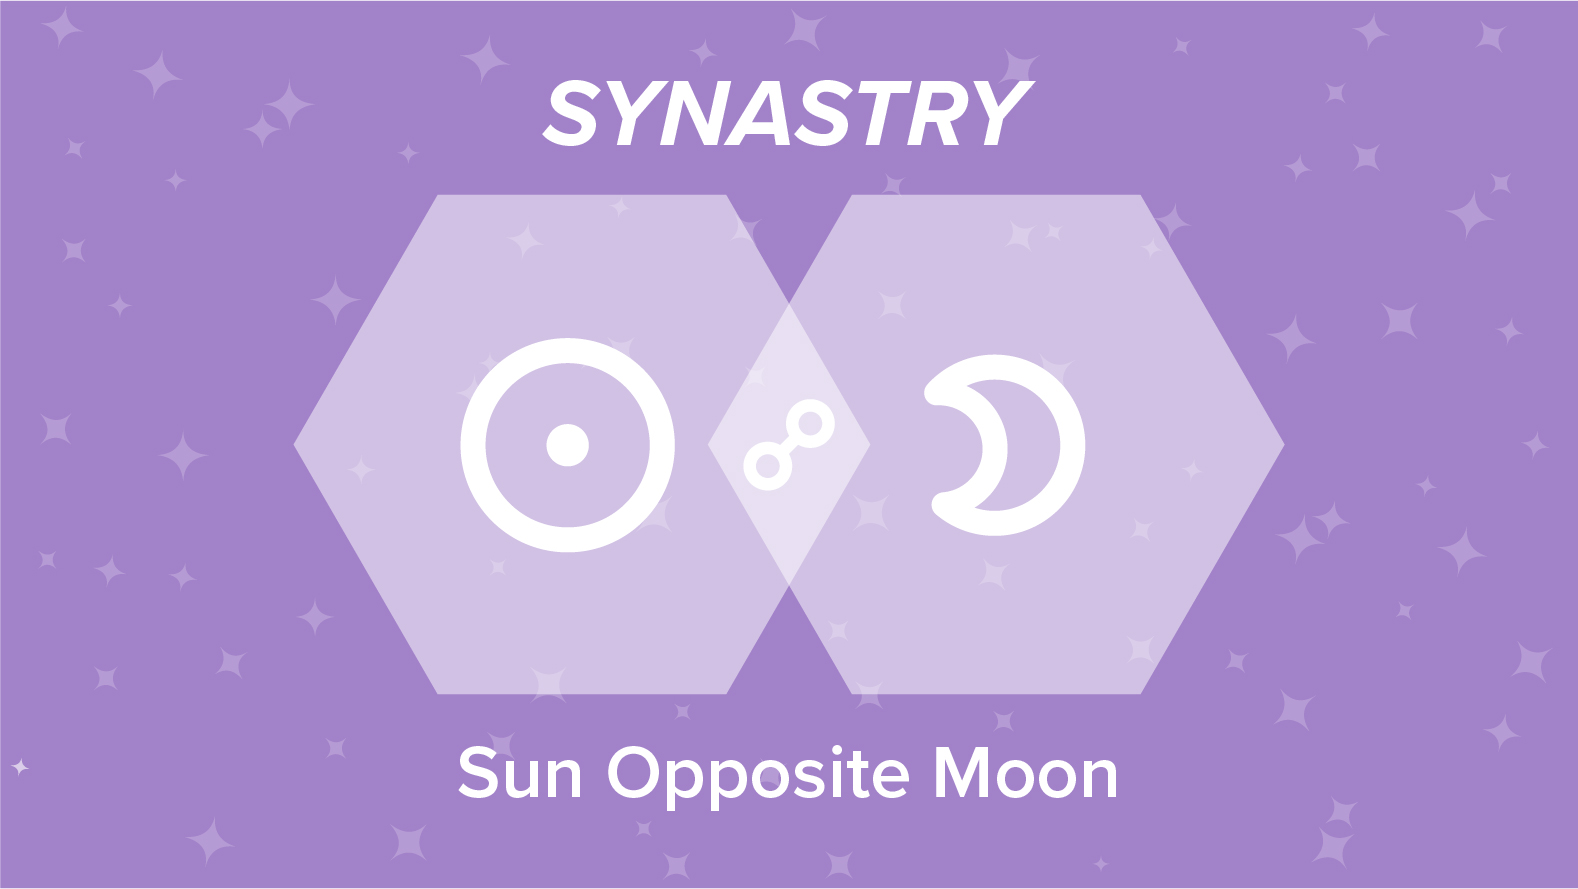 sun opposite moon synastry